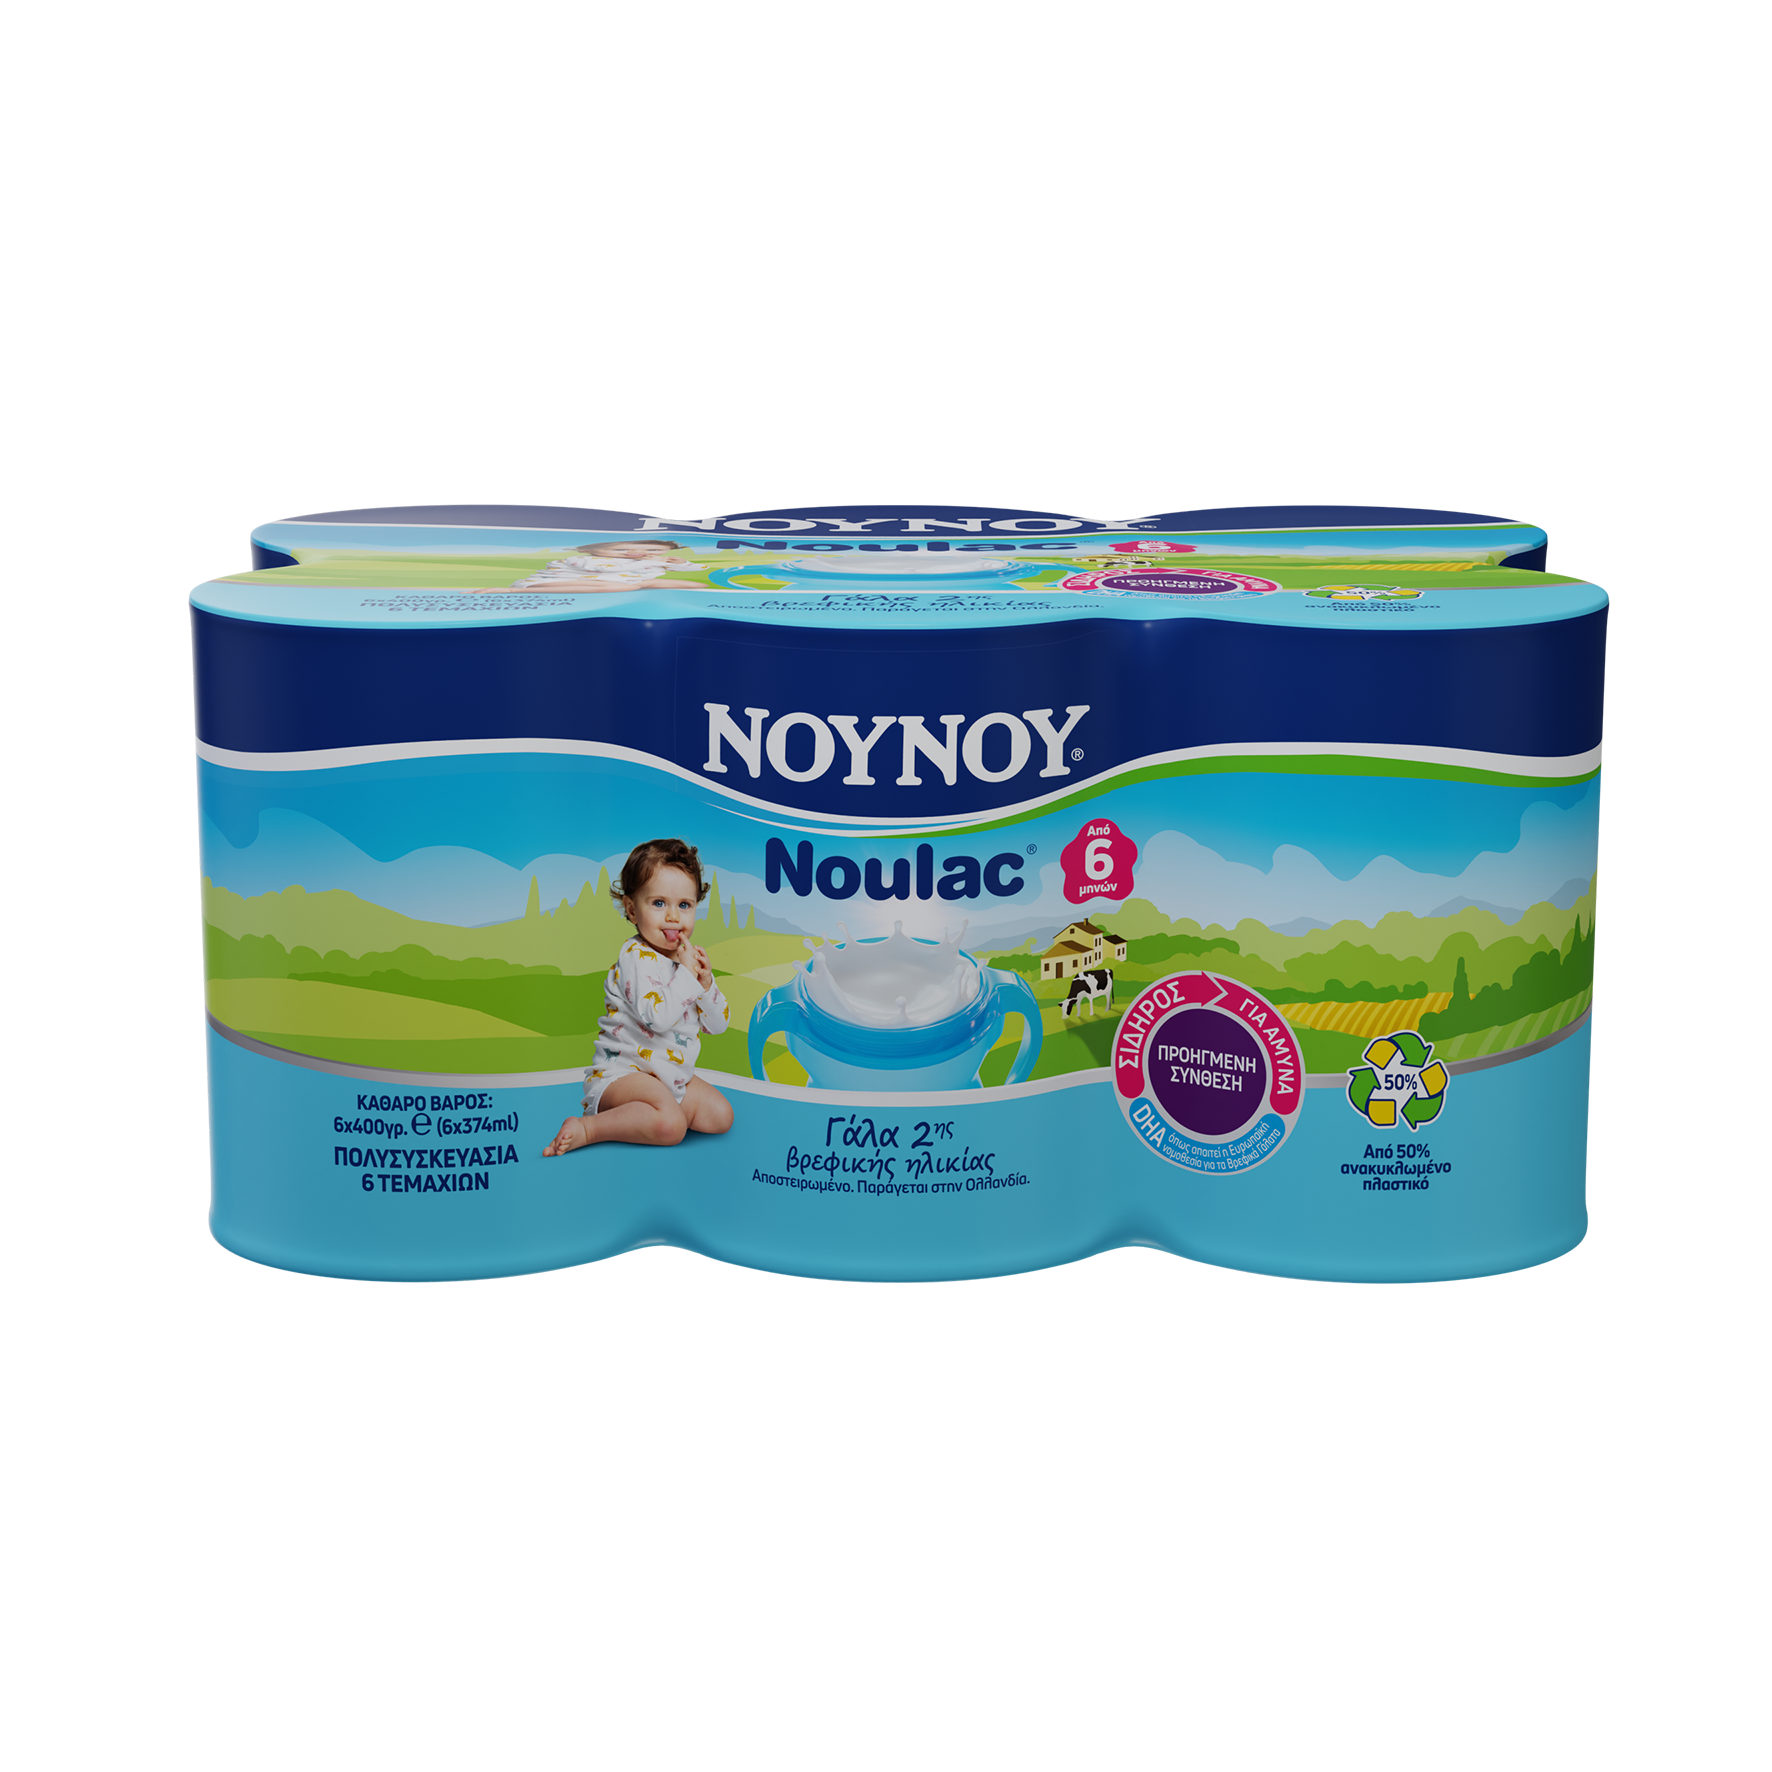 Γάλα 2ης Βρεφικής Ηλικίας Συμπυκνωμένο Noulac ΝOYNOY (6x400g)